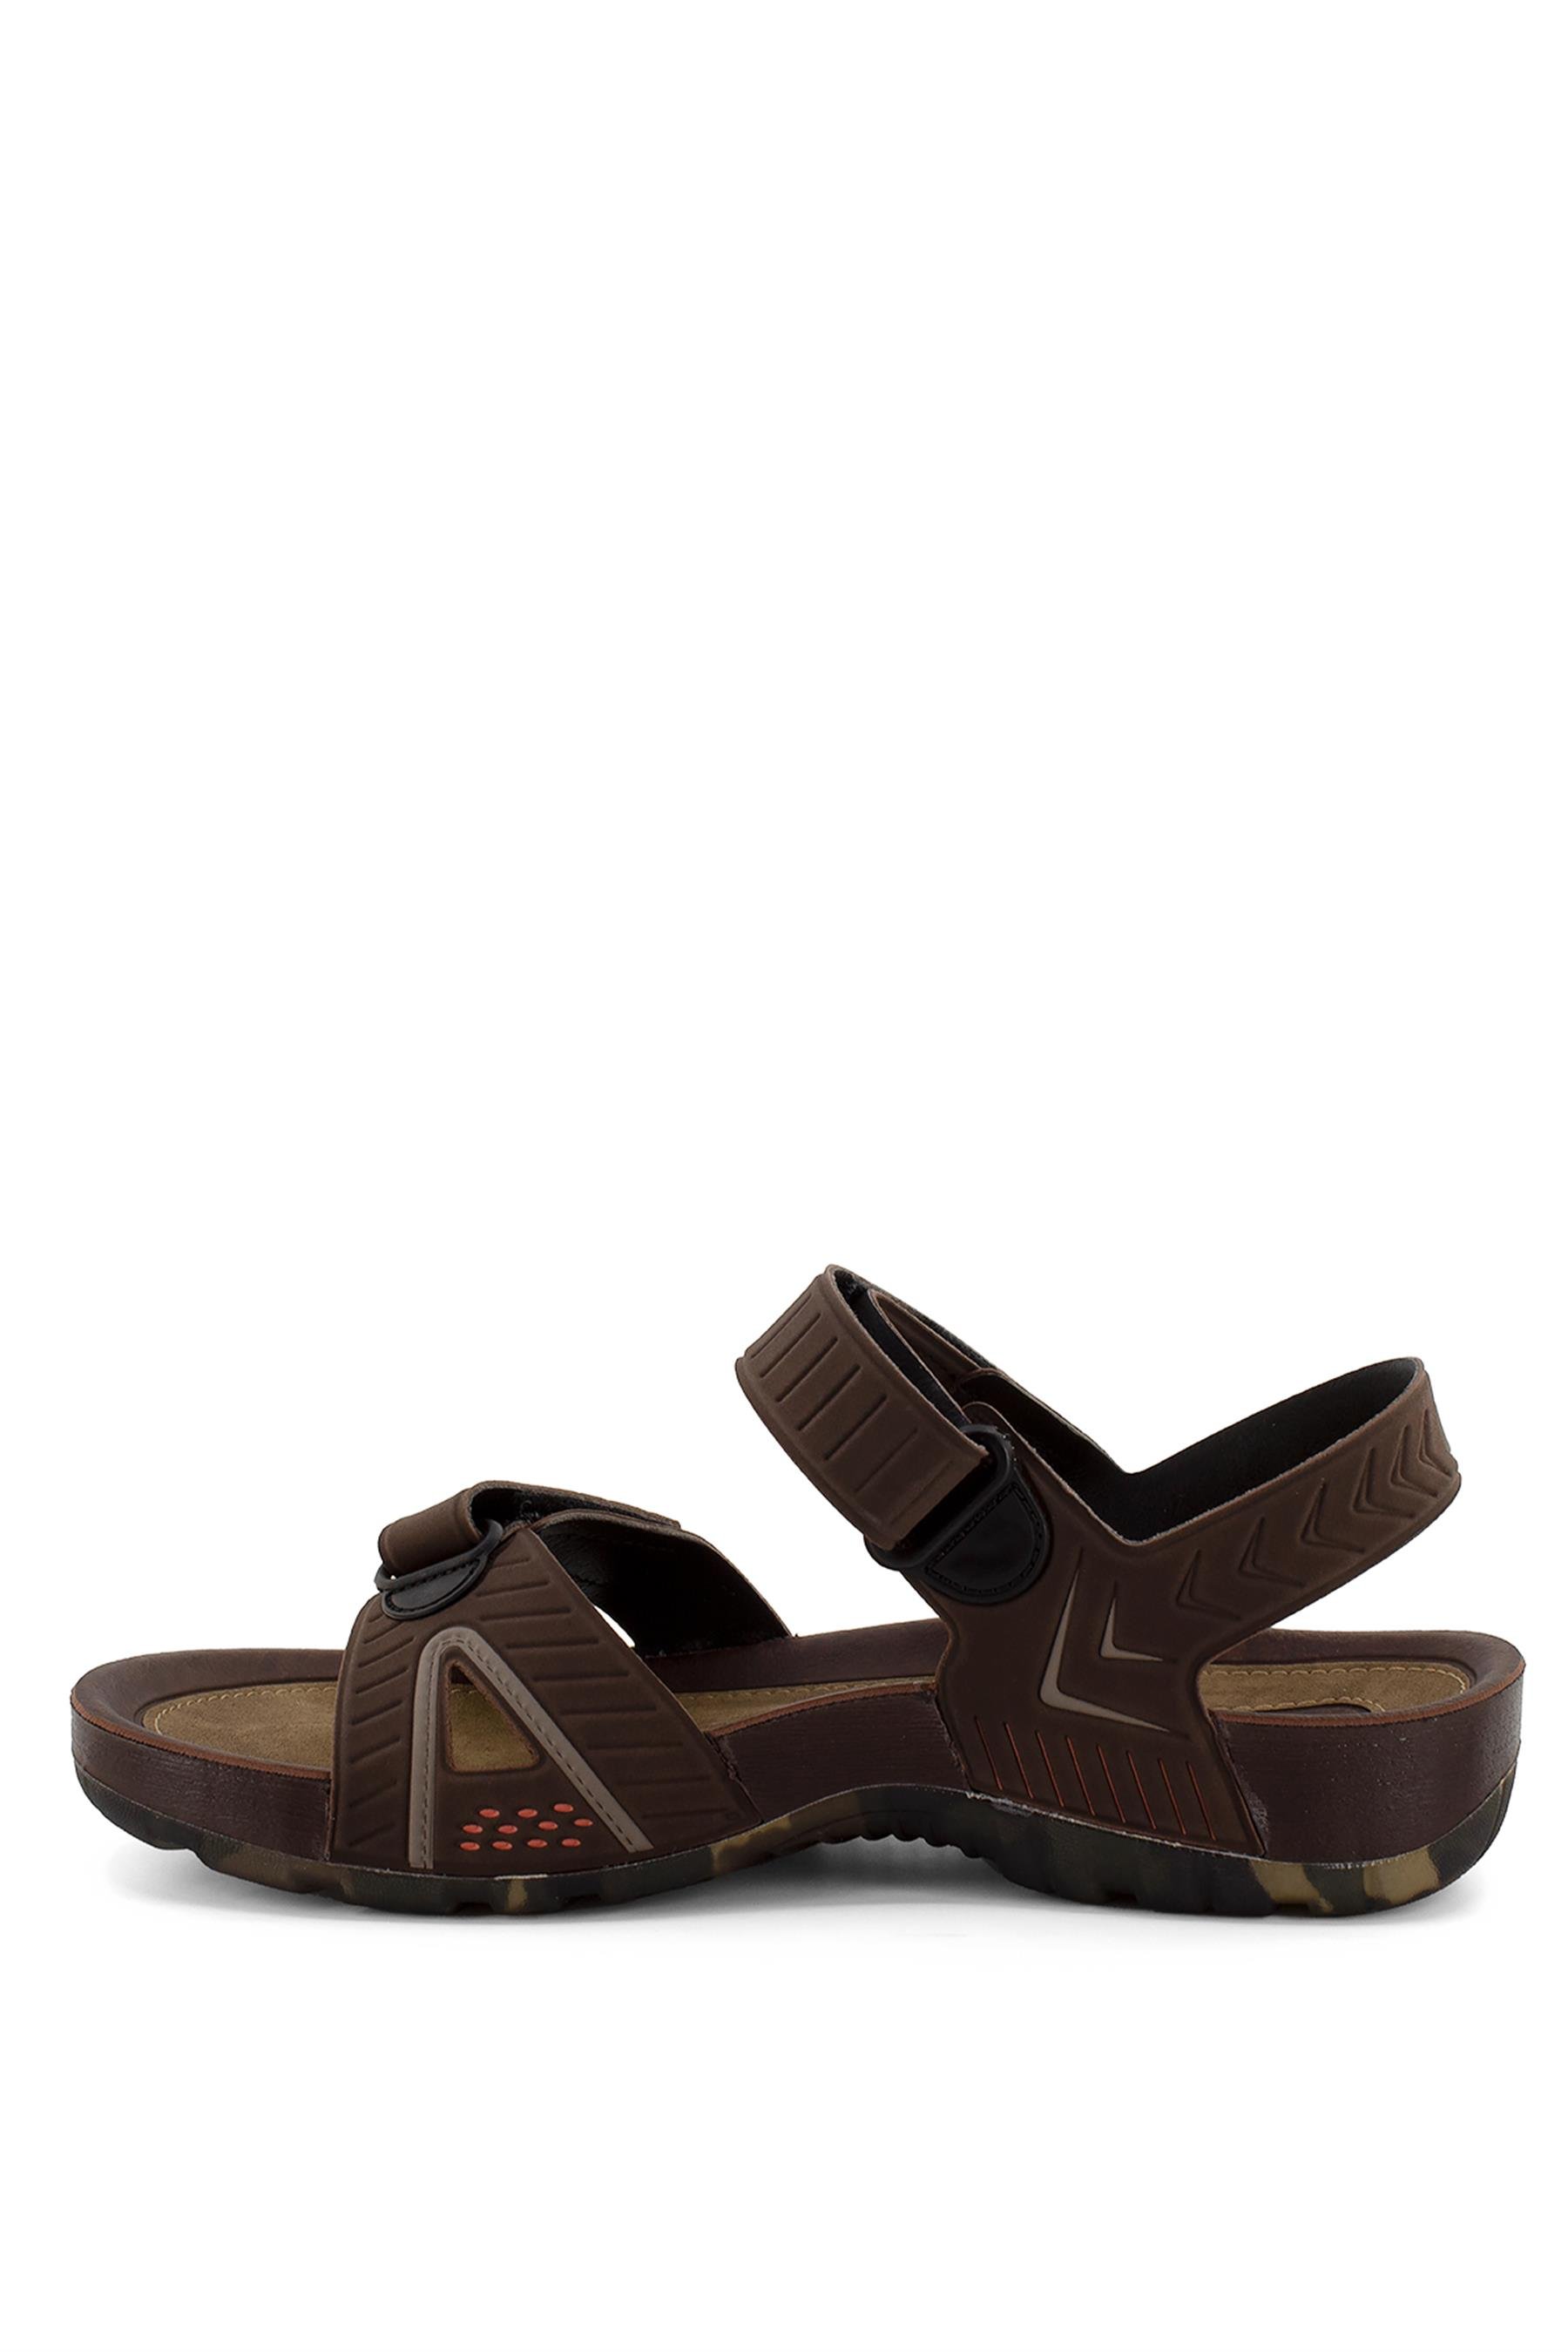 Ceyo 9829 Erkek Sandalet Kahverengi - Ayakkabı Fuarı Elit